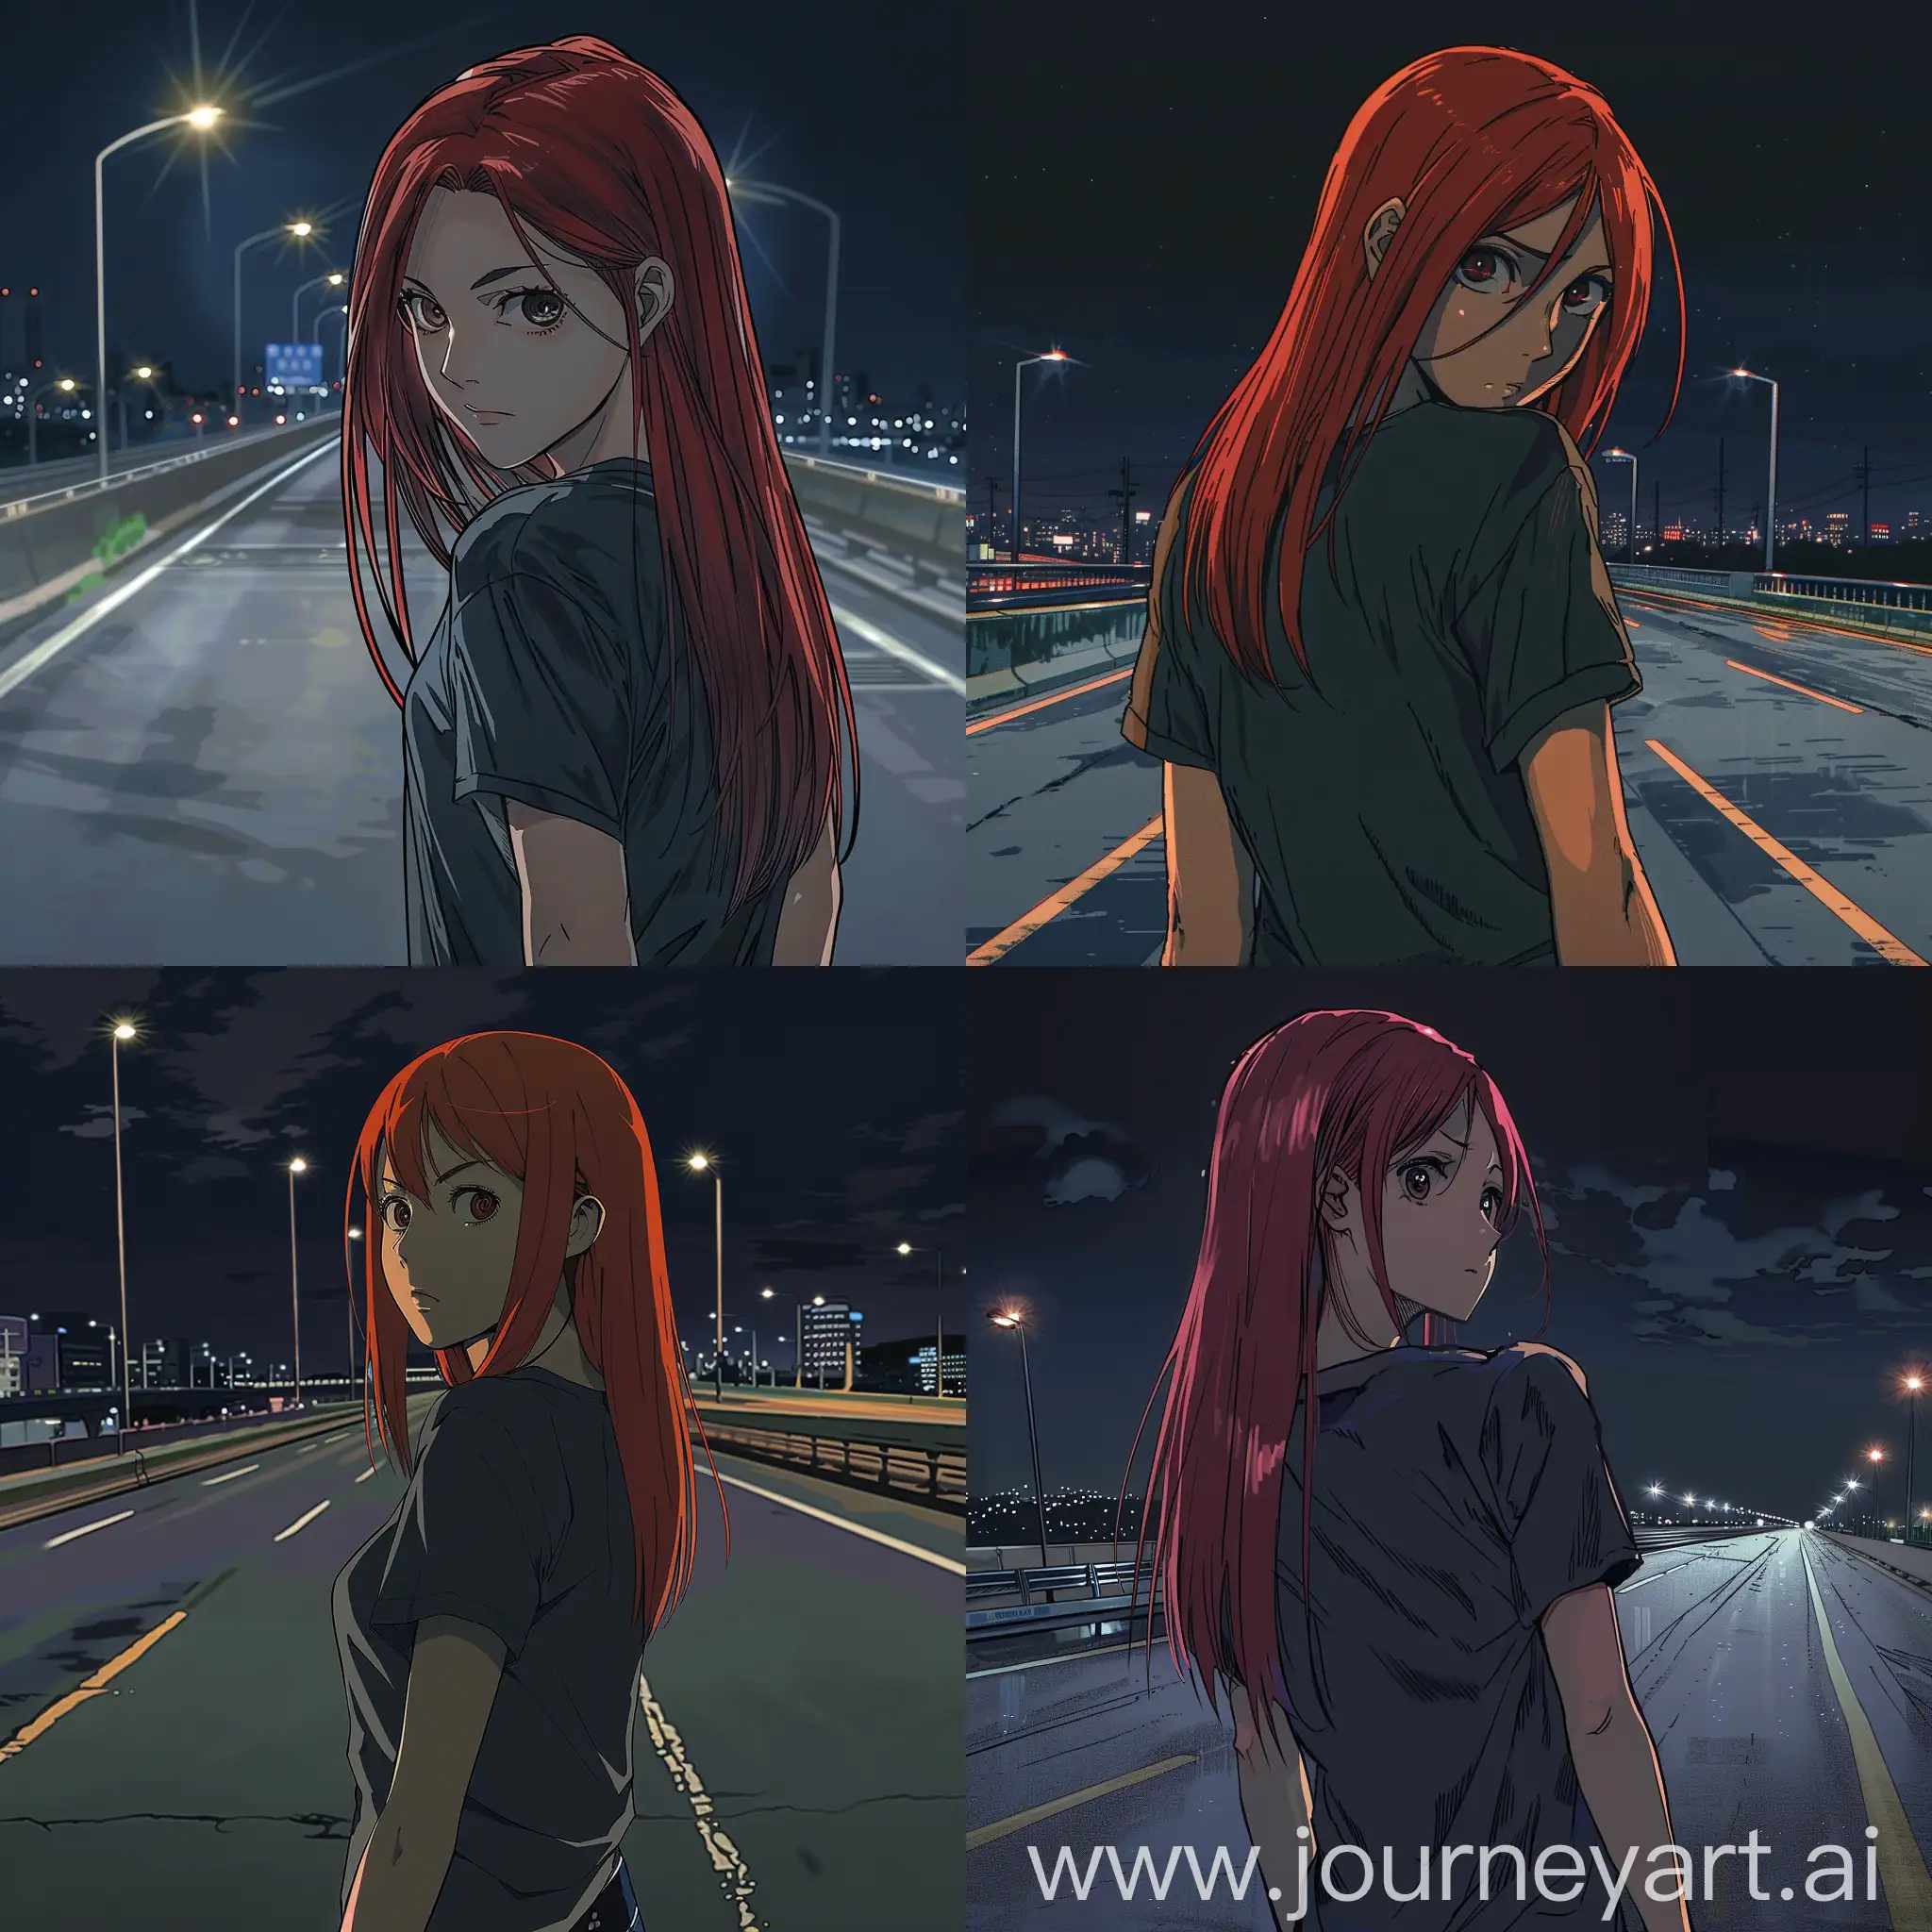 Девушка с прямыми рыжими волосами в темной майке оборачивается через плечо и смотрит вдаль в ночном городское шоссе в аниме рисовке